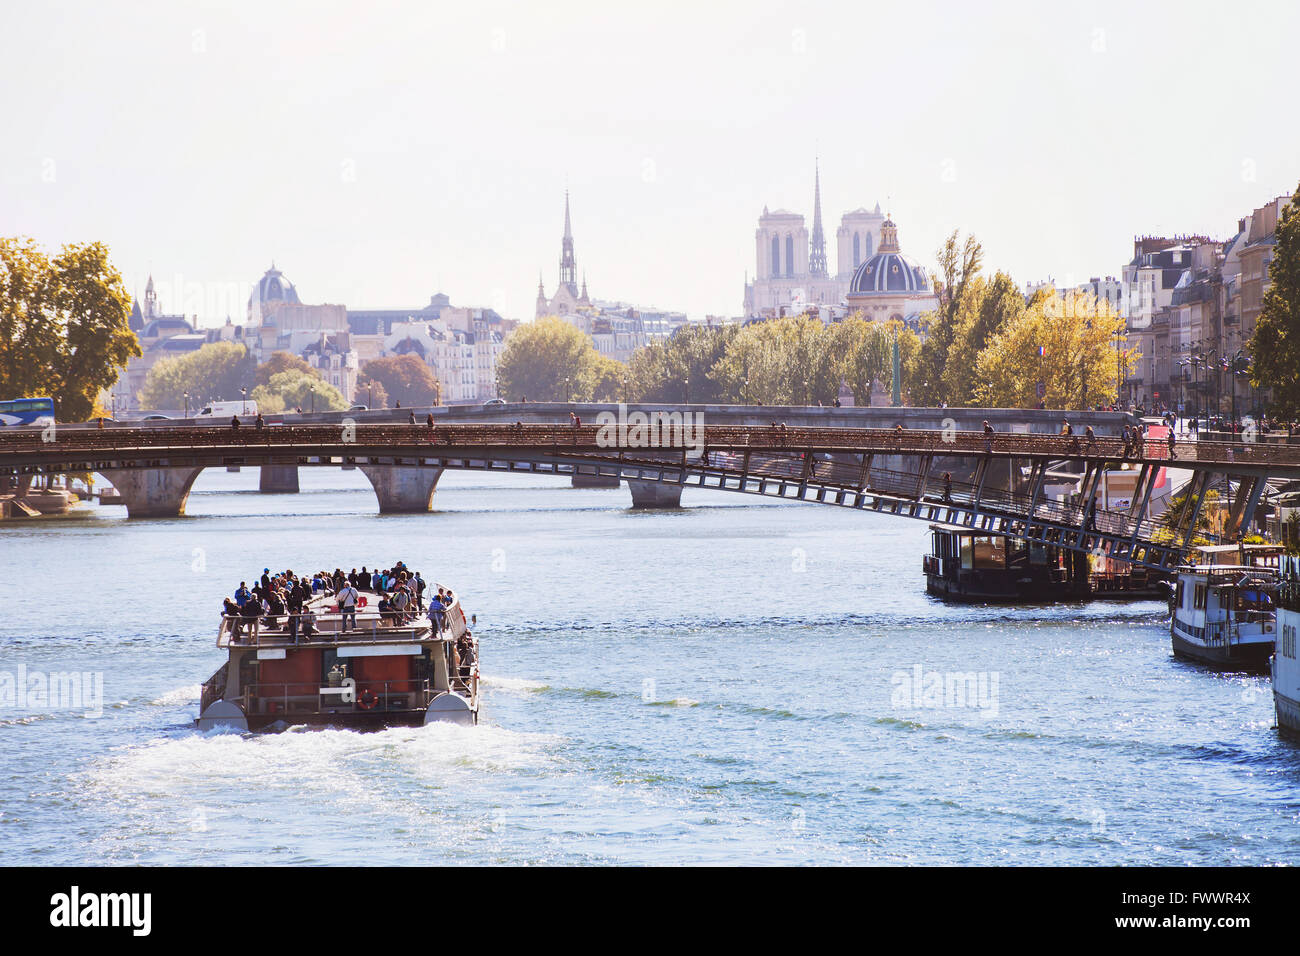 Croisière sur Seine à Paris, tourisme et sites touristiques de France Banque D'Images